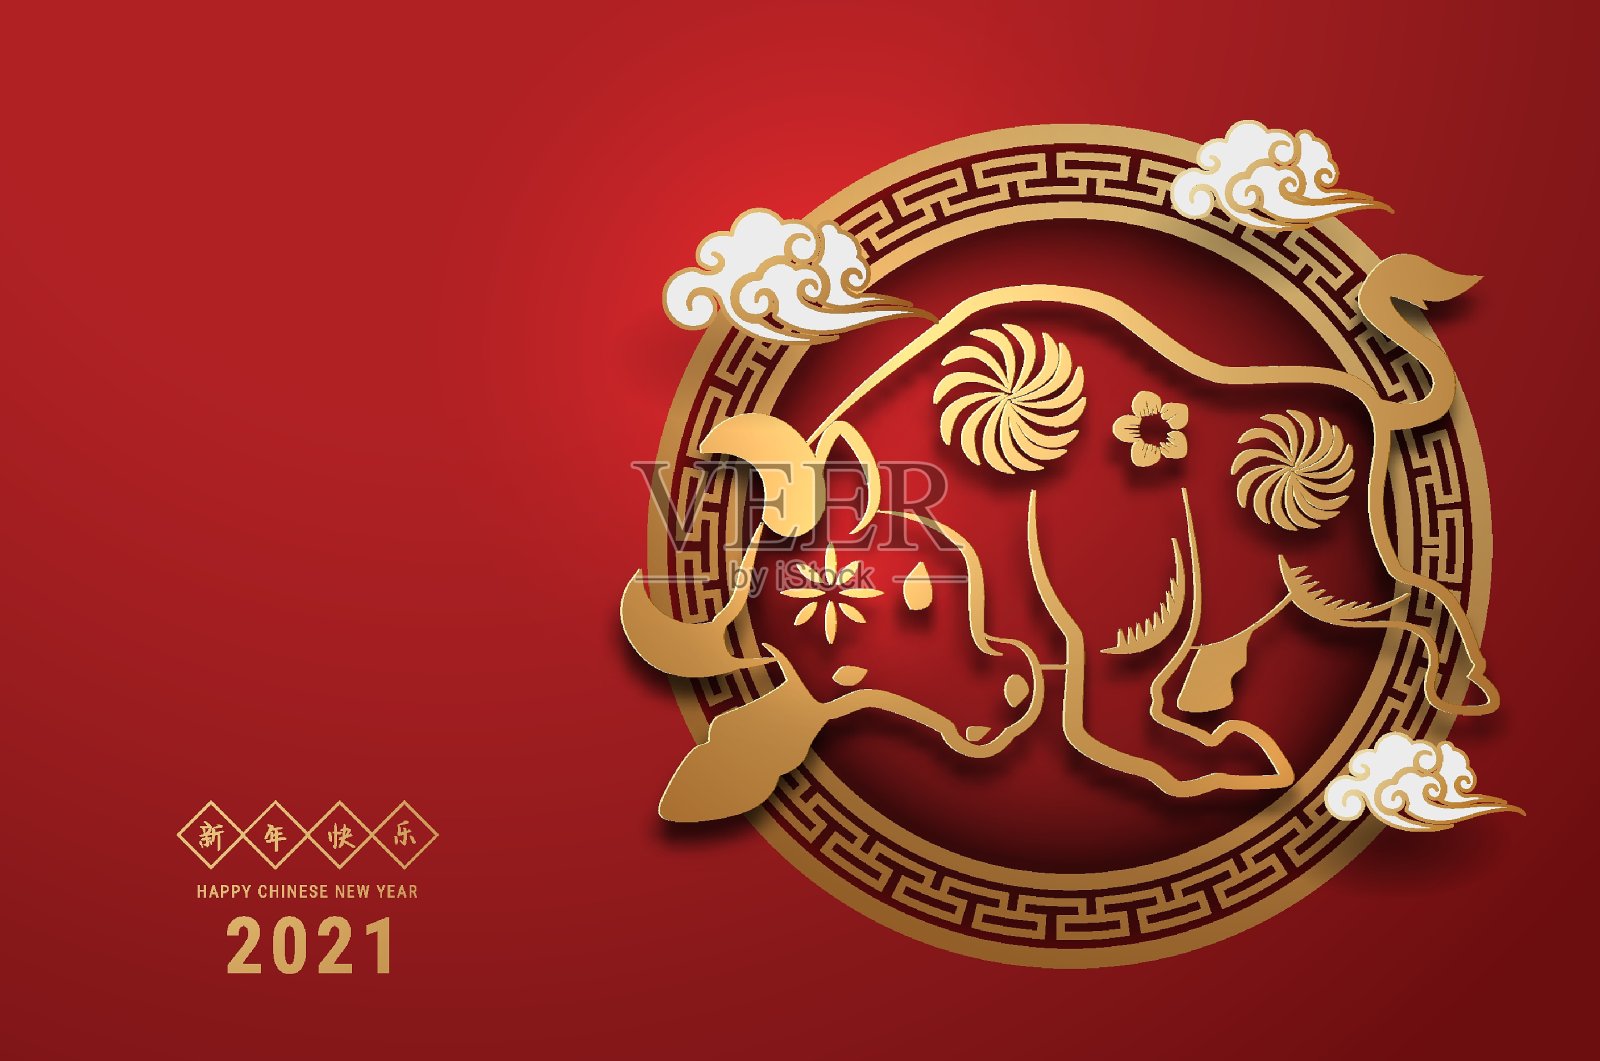 2021年中国新年贺年卡生肖剪纸。牛年，金色和红色点缀。概念假日横幅模板，装饰元素。翻译过来就是:2021年春节快乐，插画图片素材